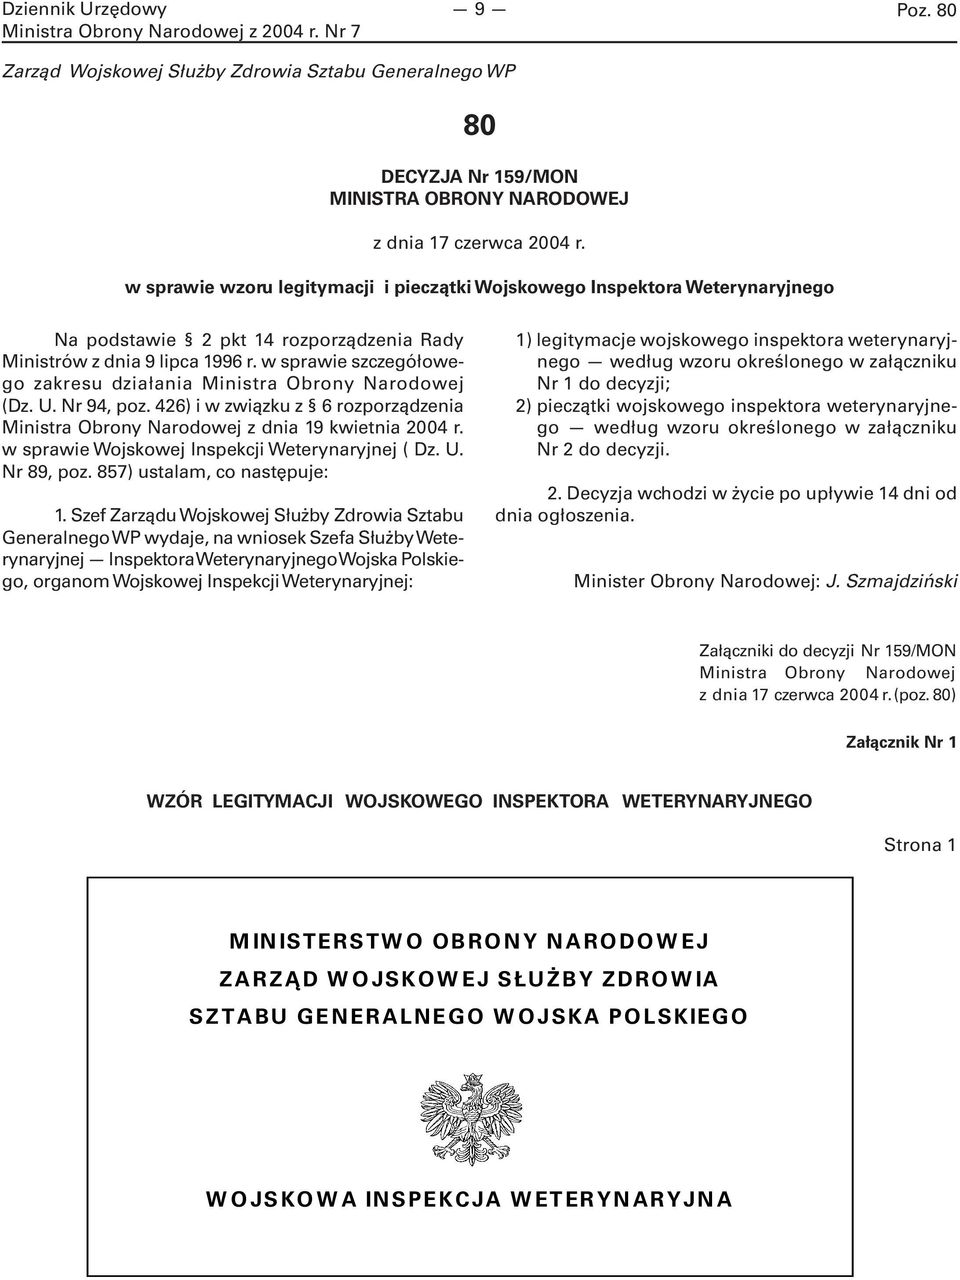 w sprawie szczegółowego zakresu działania Ministra Obrony Narodowej (Dz. U. Nr 94, poz. 426) i w związku z 6 rozporządzenia Ministra Obrony Narodowej z dnia 19 kwietnia 2004 r.